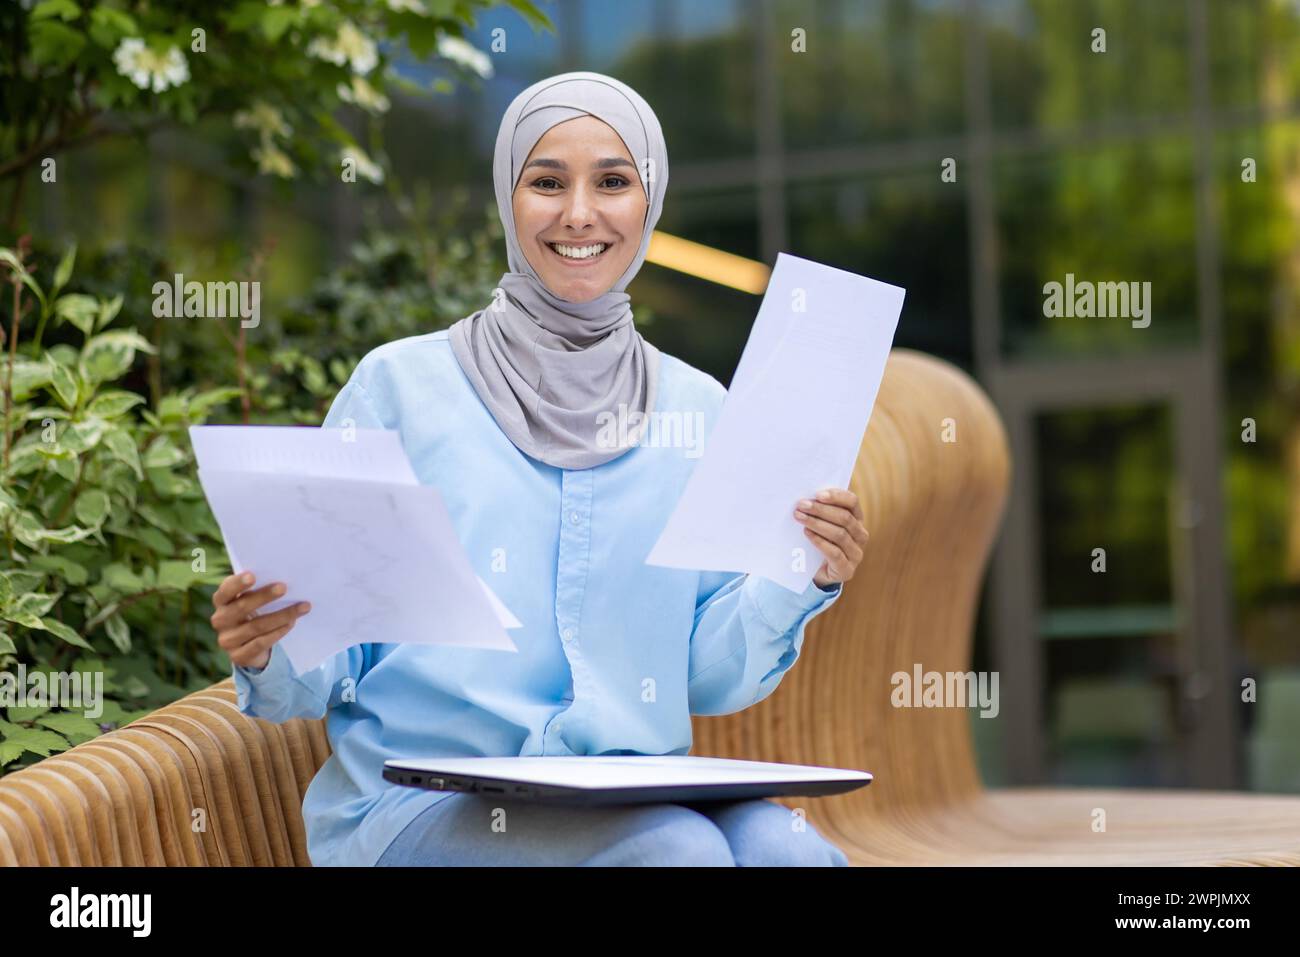 Una mujer musulmana profesional con un pañuelo sosteniendo papeles, mostrando confianza y una cálida sonrisa, sentada en un banco al aire libre. Foto de stock